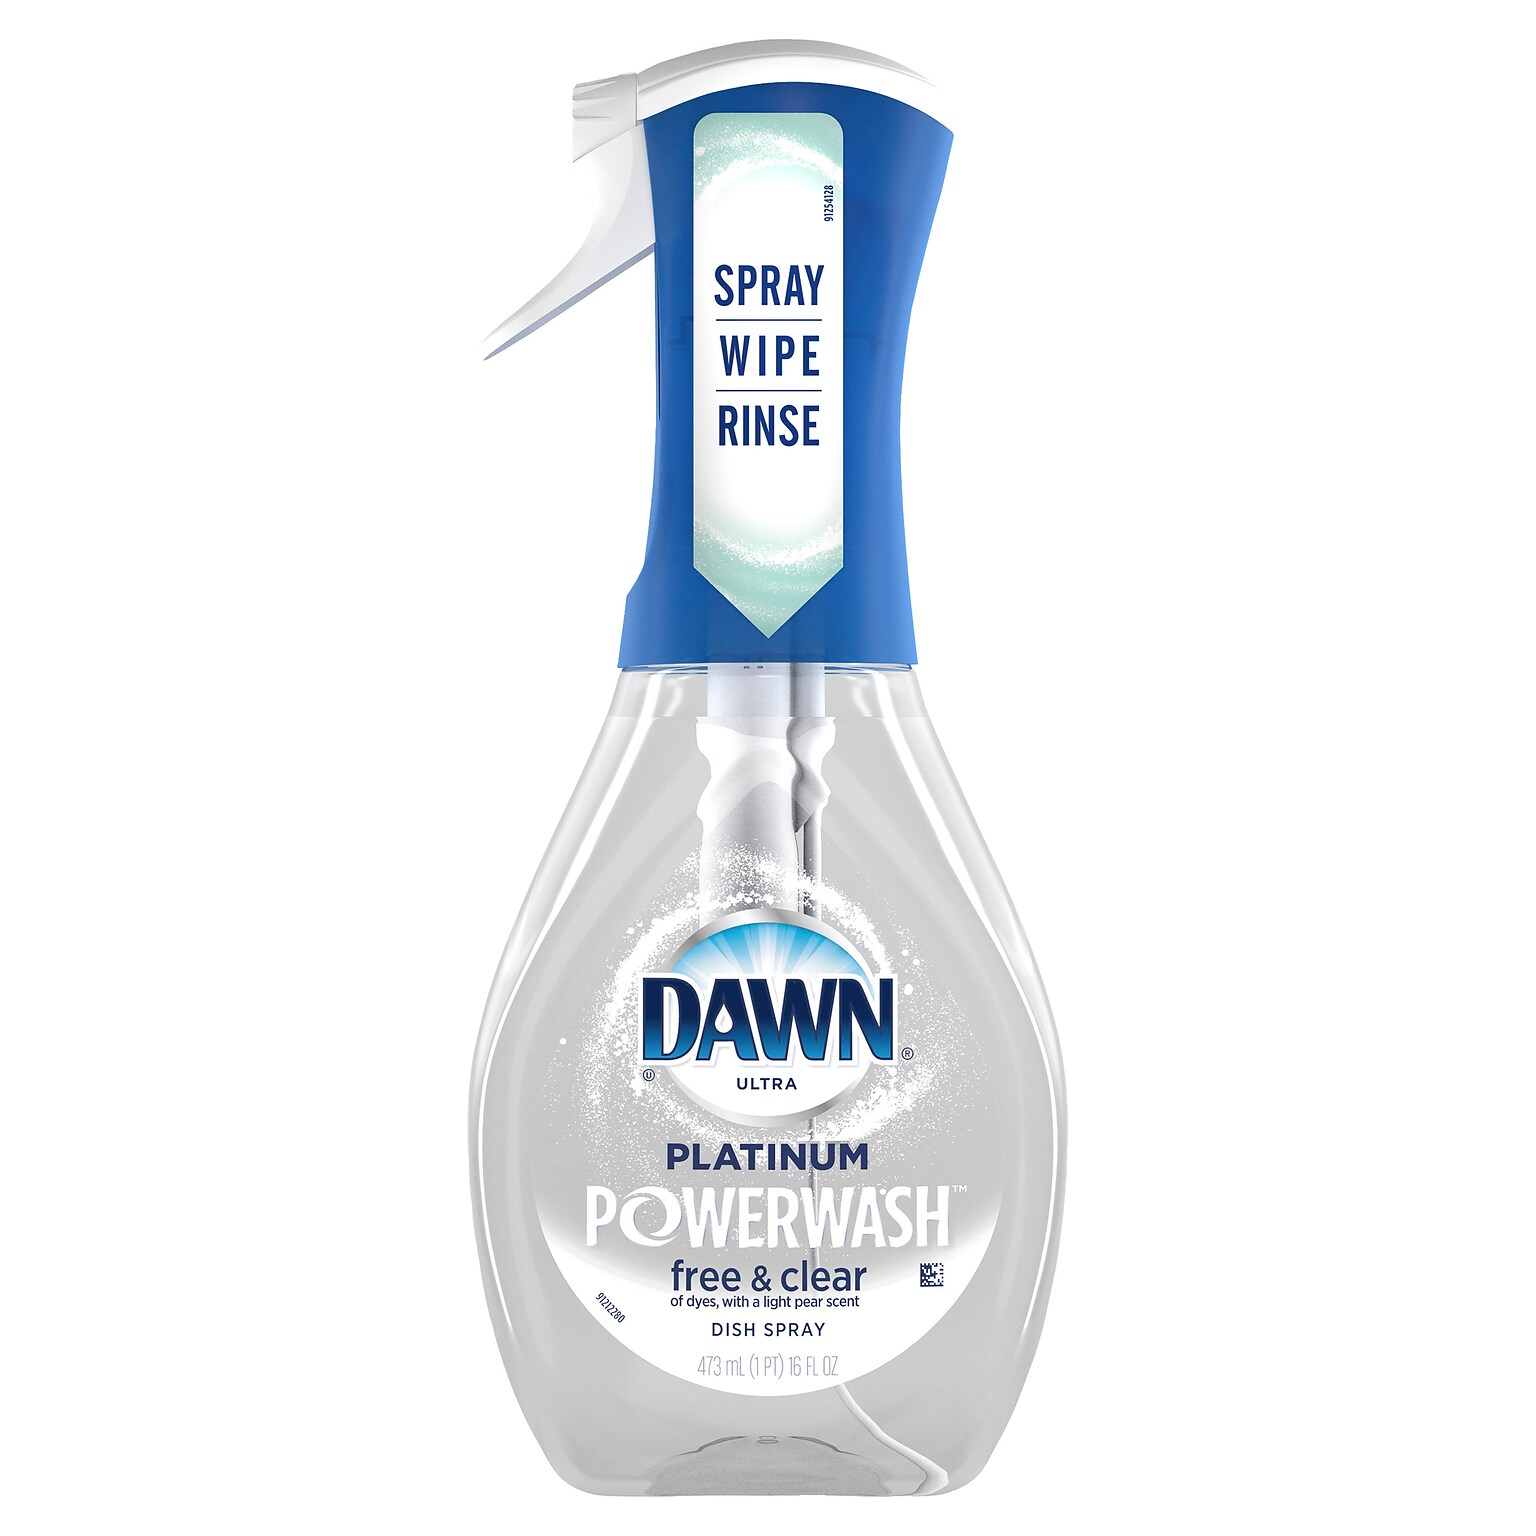 Dawn Ultra Platinum Powerwash Free & Clear Dishwasher Detergent Liquid, Light Pear Scent, 16 oz., (65732)